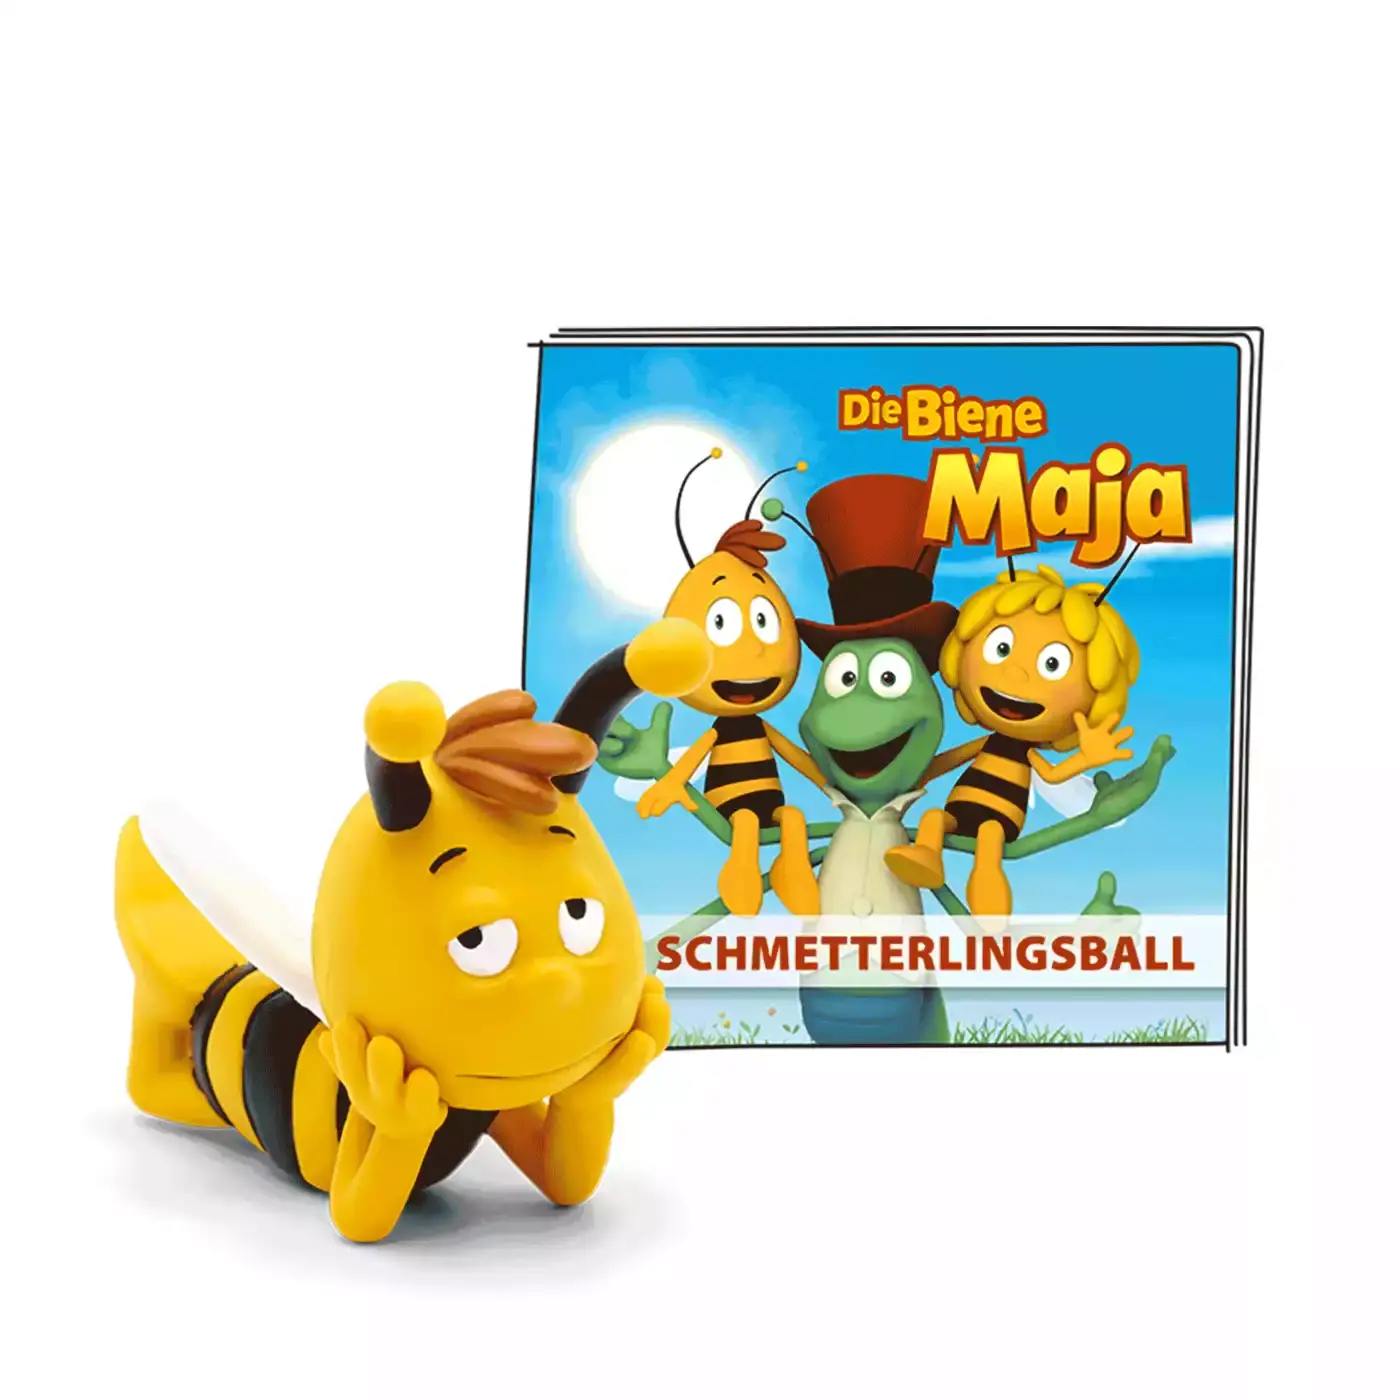 Die Biene Maja - Der Schmetterlingsball tonies 2000578647902 3